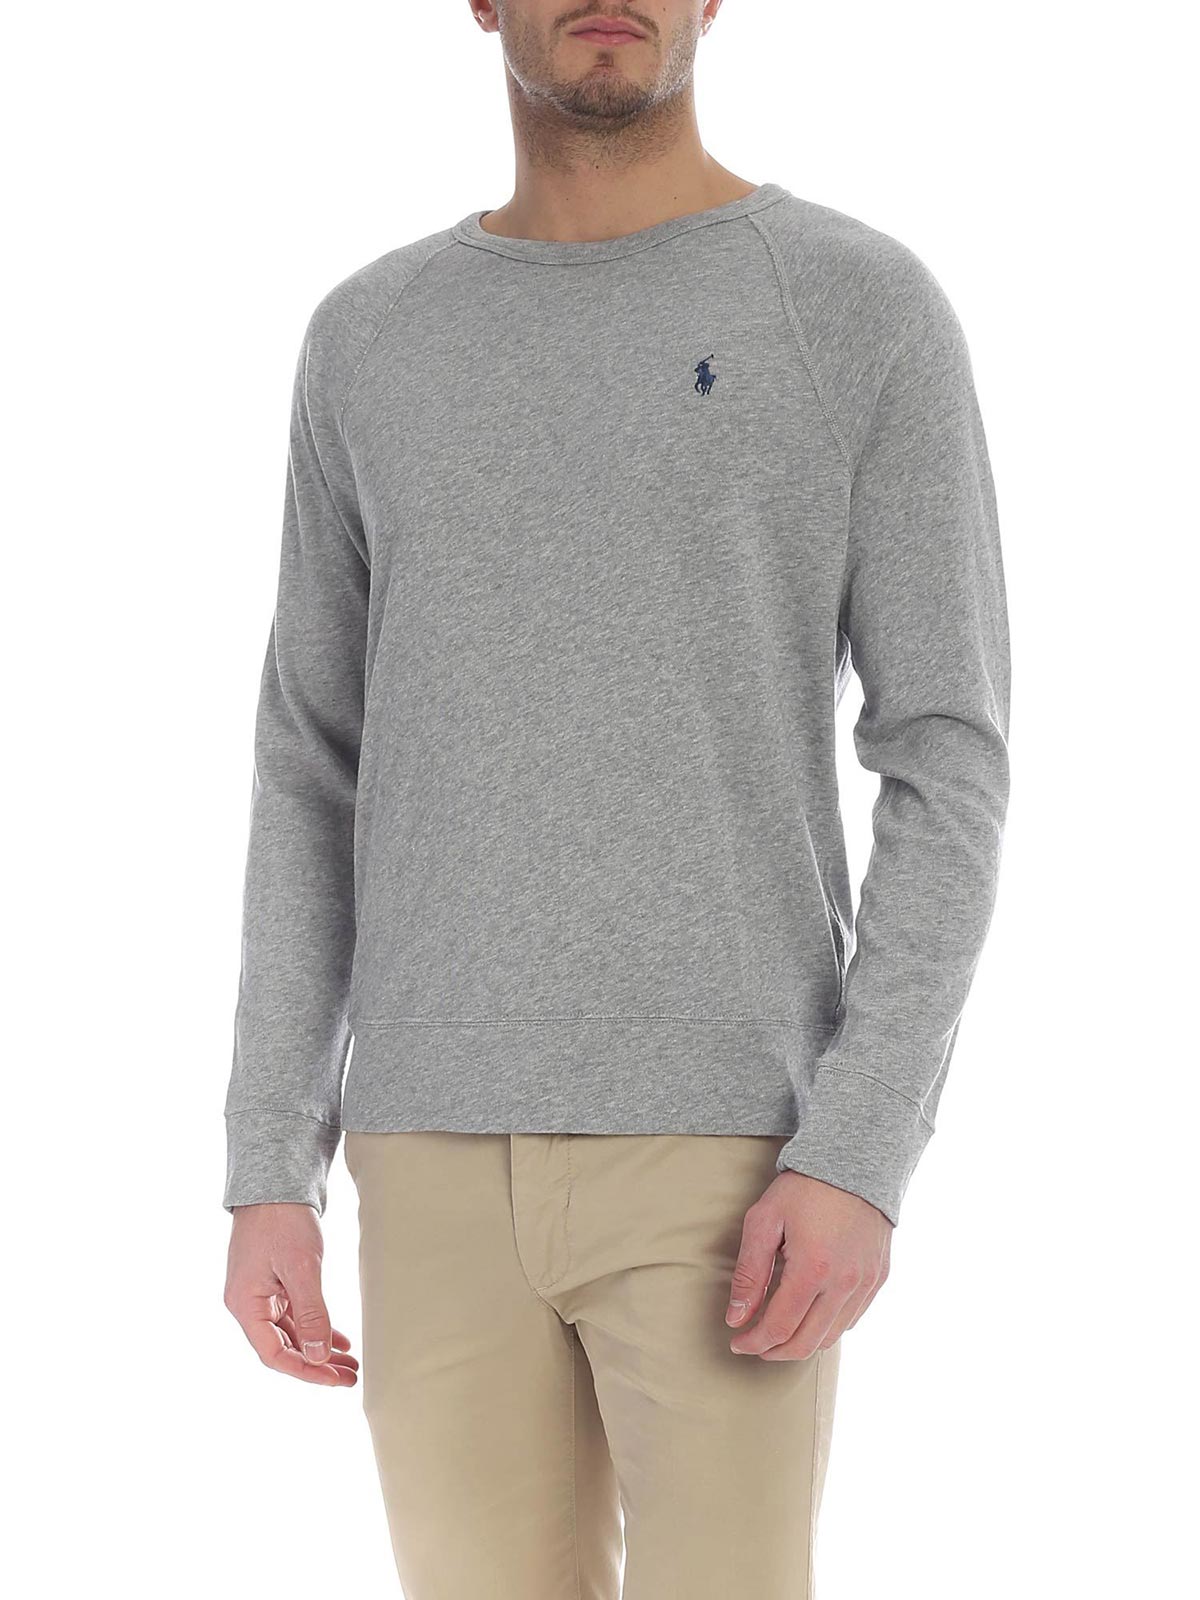 ralph lauren grey sweatshirt mens